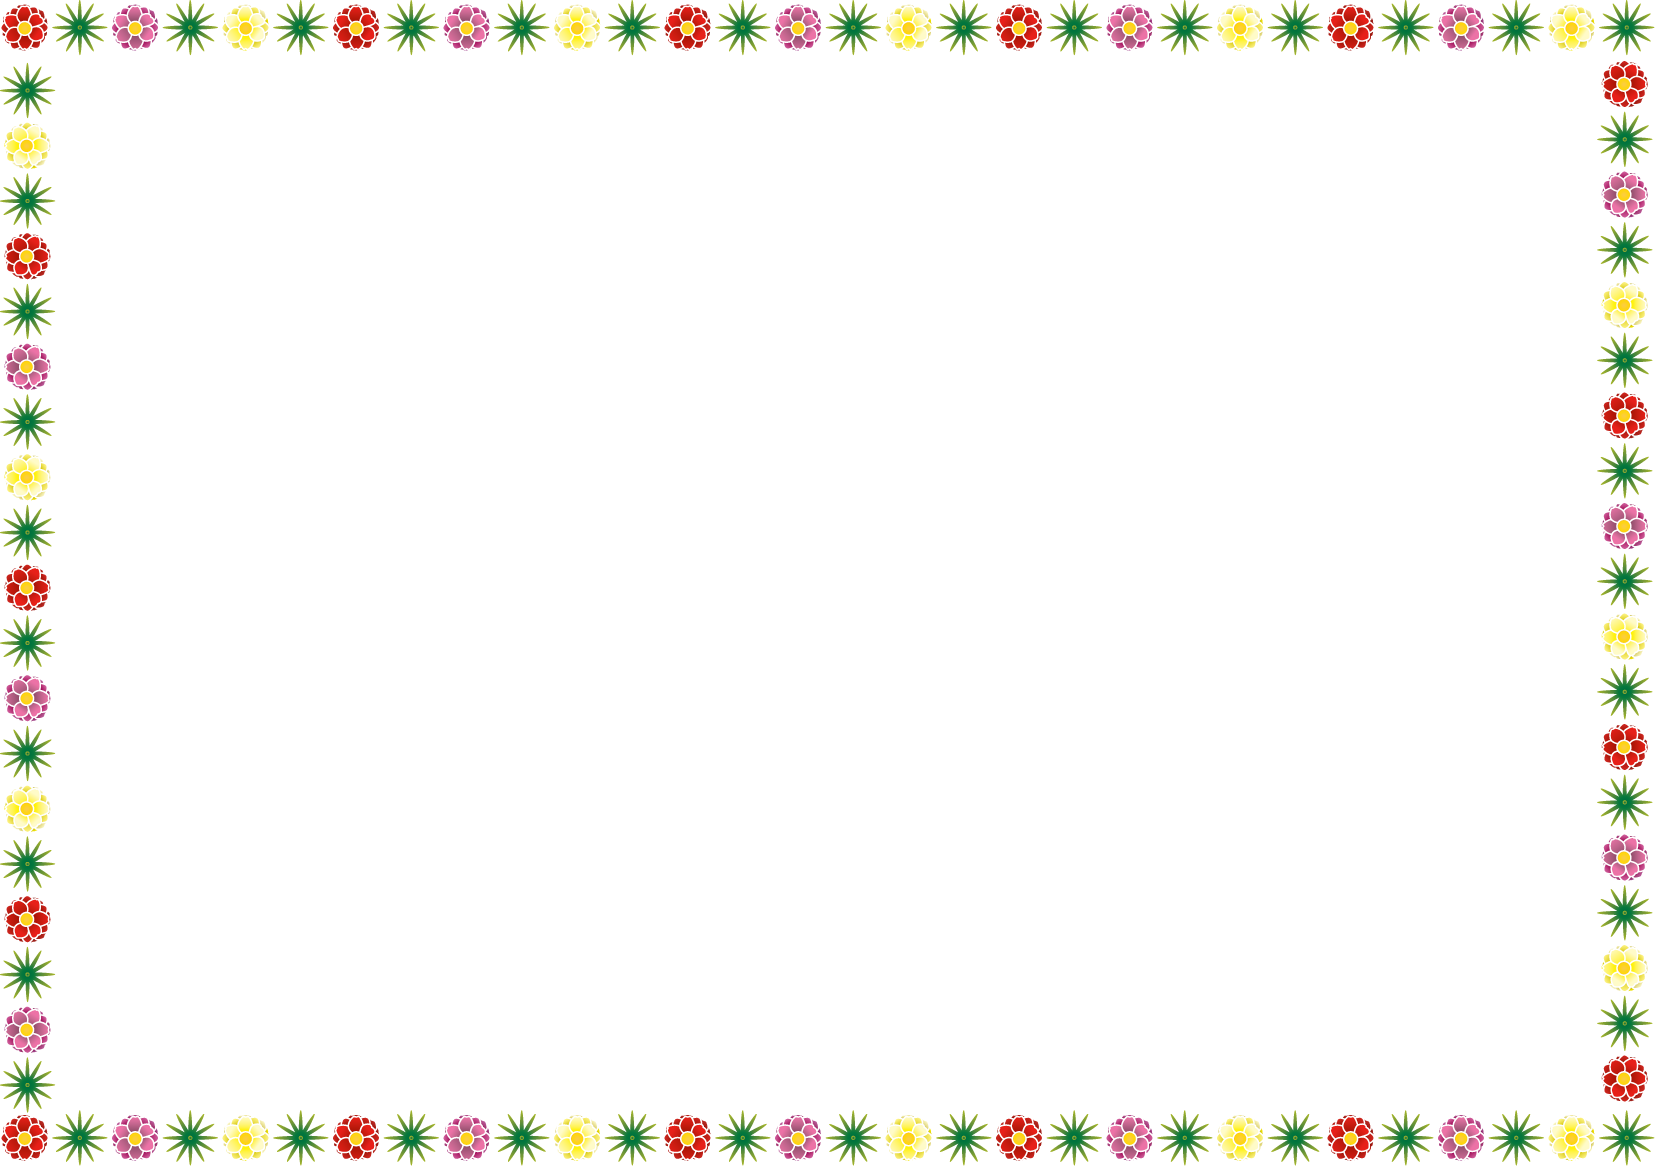 夏の花の飾り枠02 松葉ボタン 花の無料イラスト素材 イラストポップ